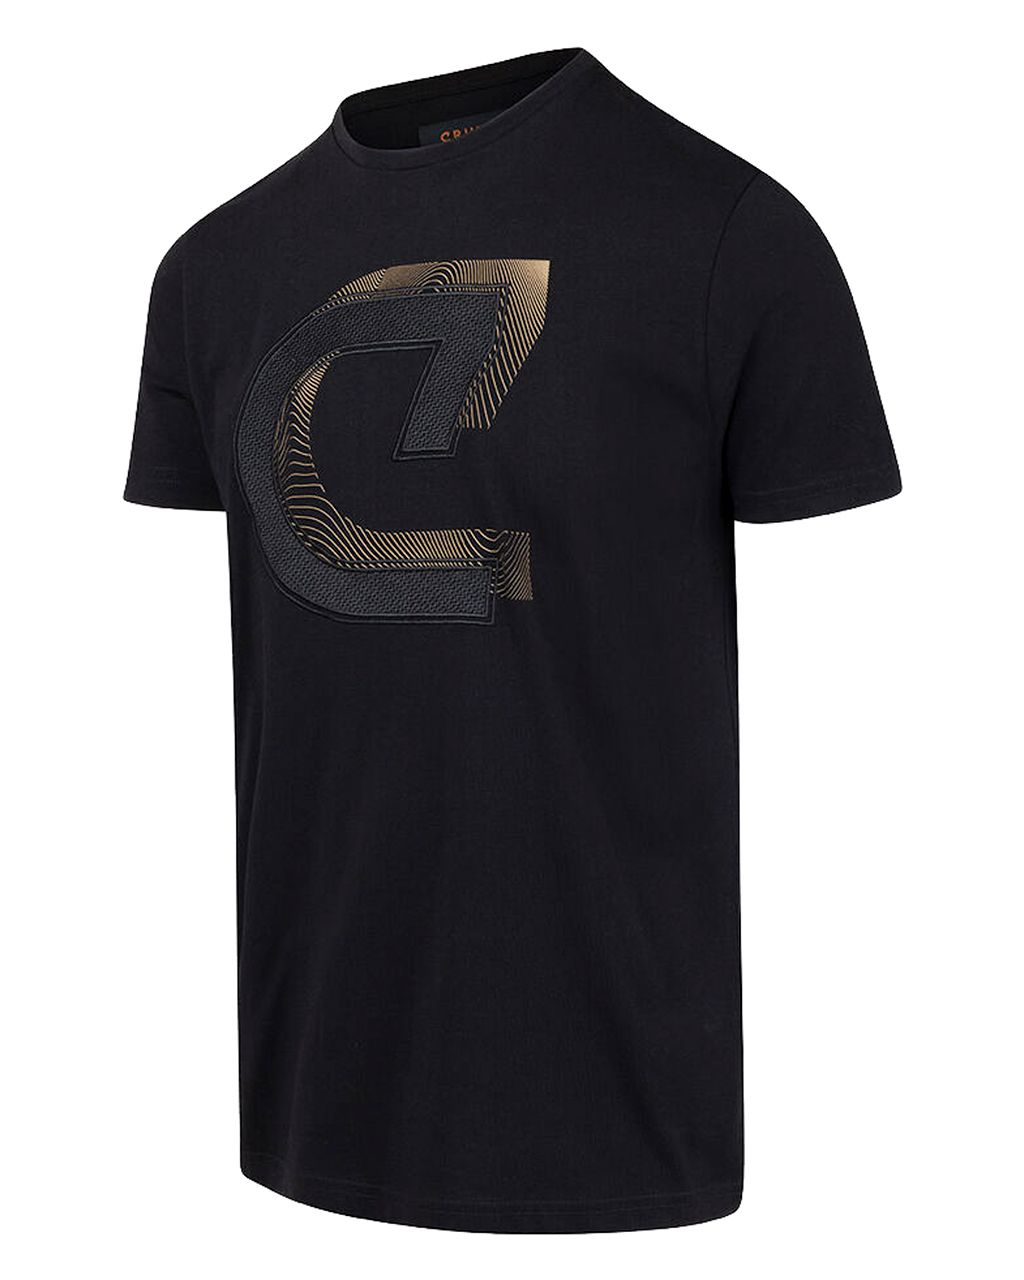 Cruyff Julien T-shirt Zwart 078516-001-L